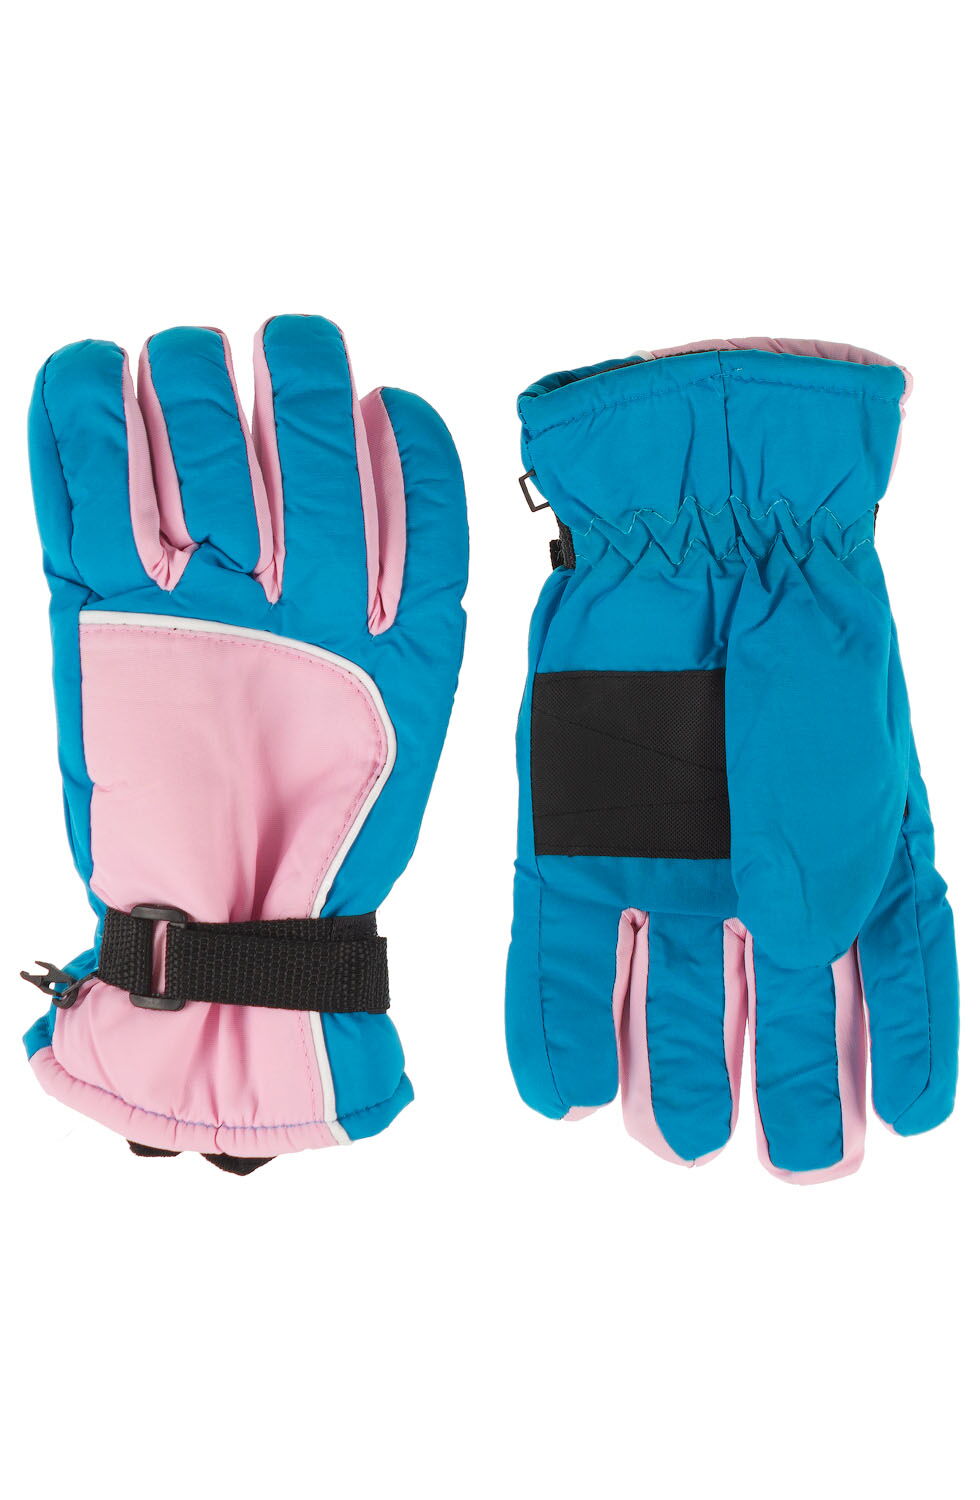 Перчатки для девочки зимние из непромокаемой ткани SKI GLOVES голубые с розовым - цена